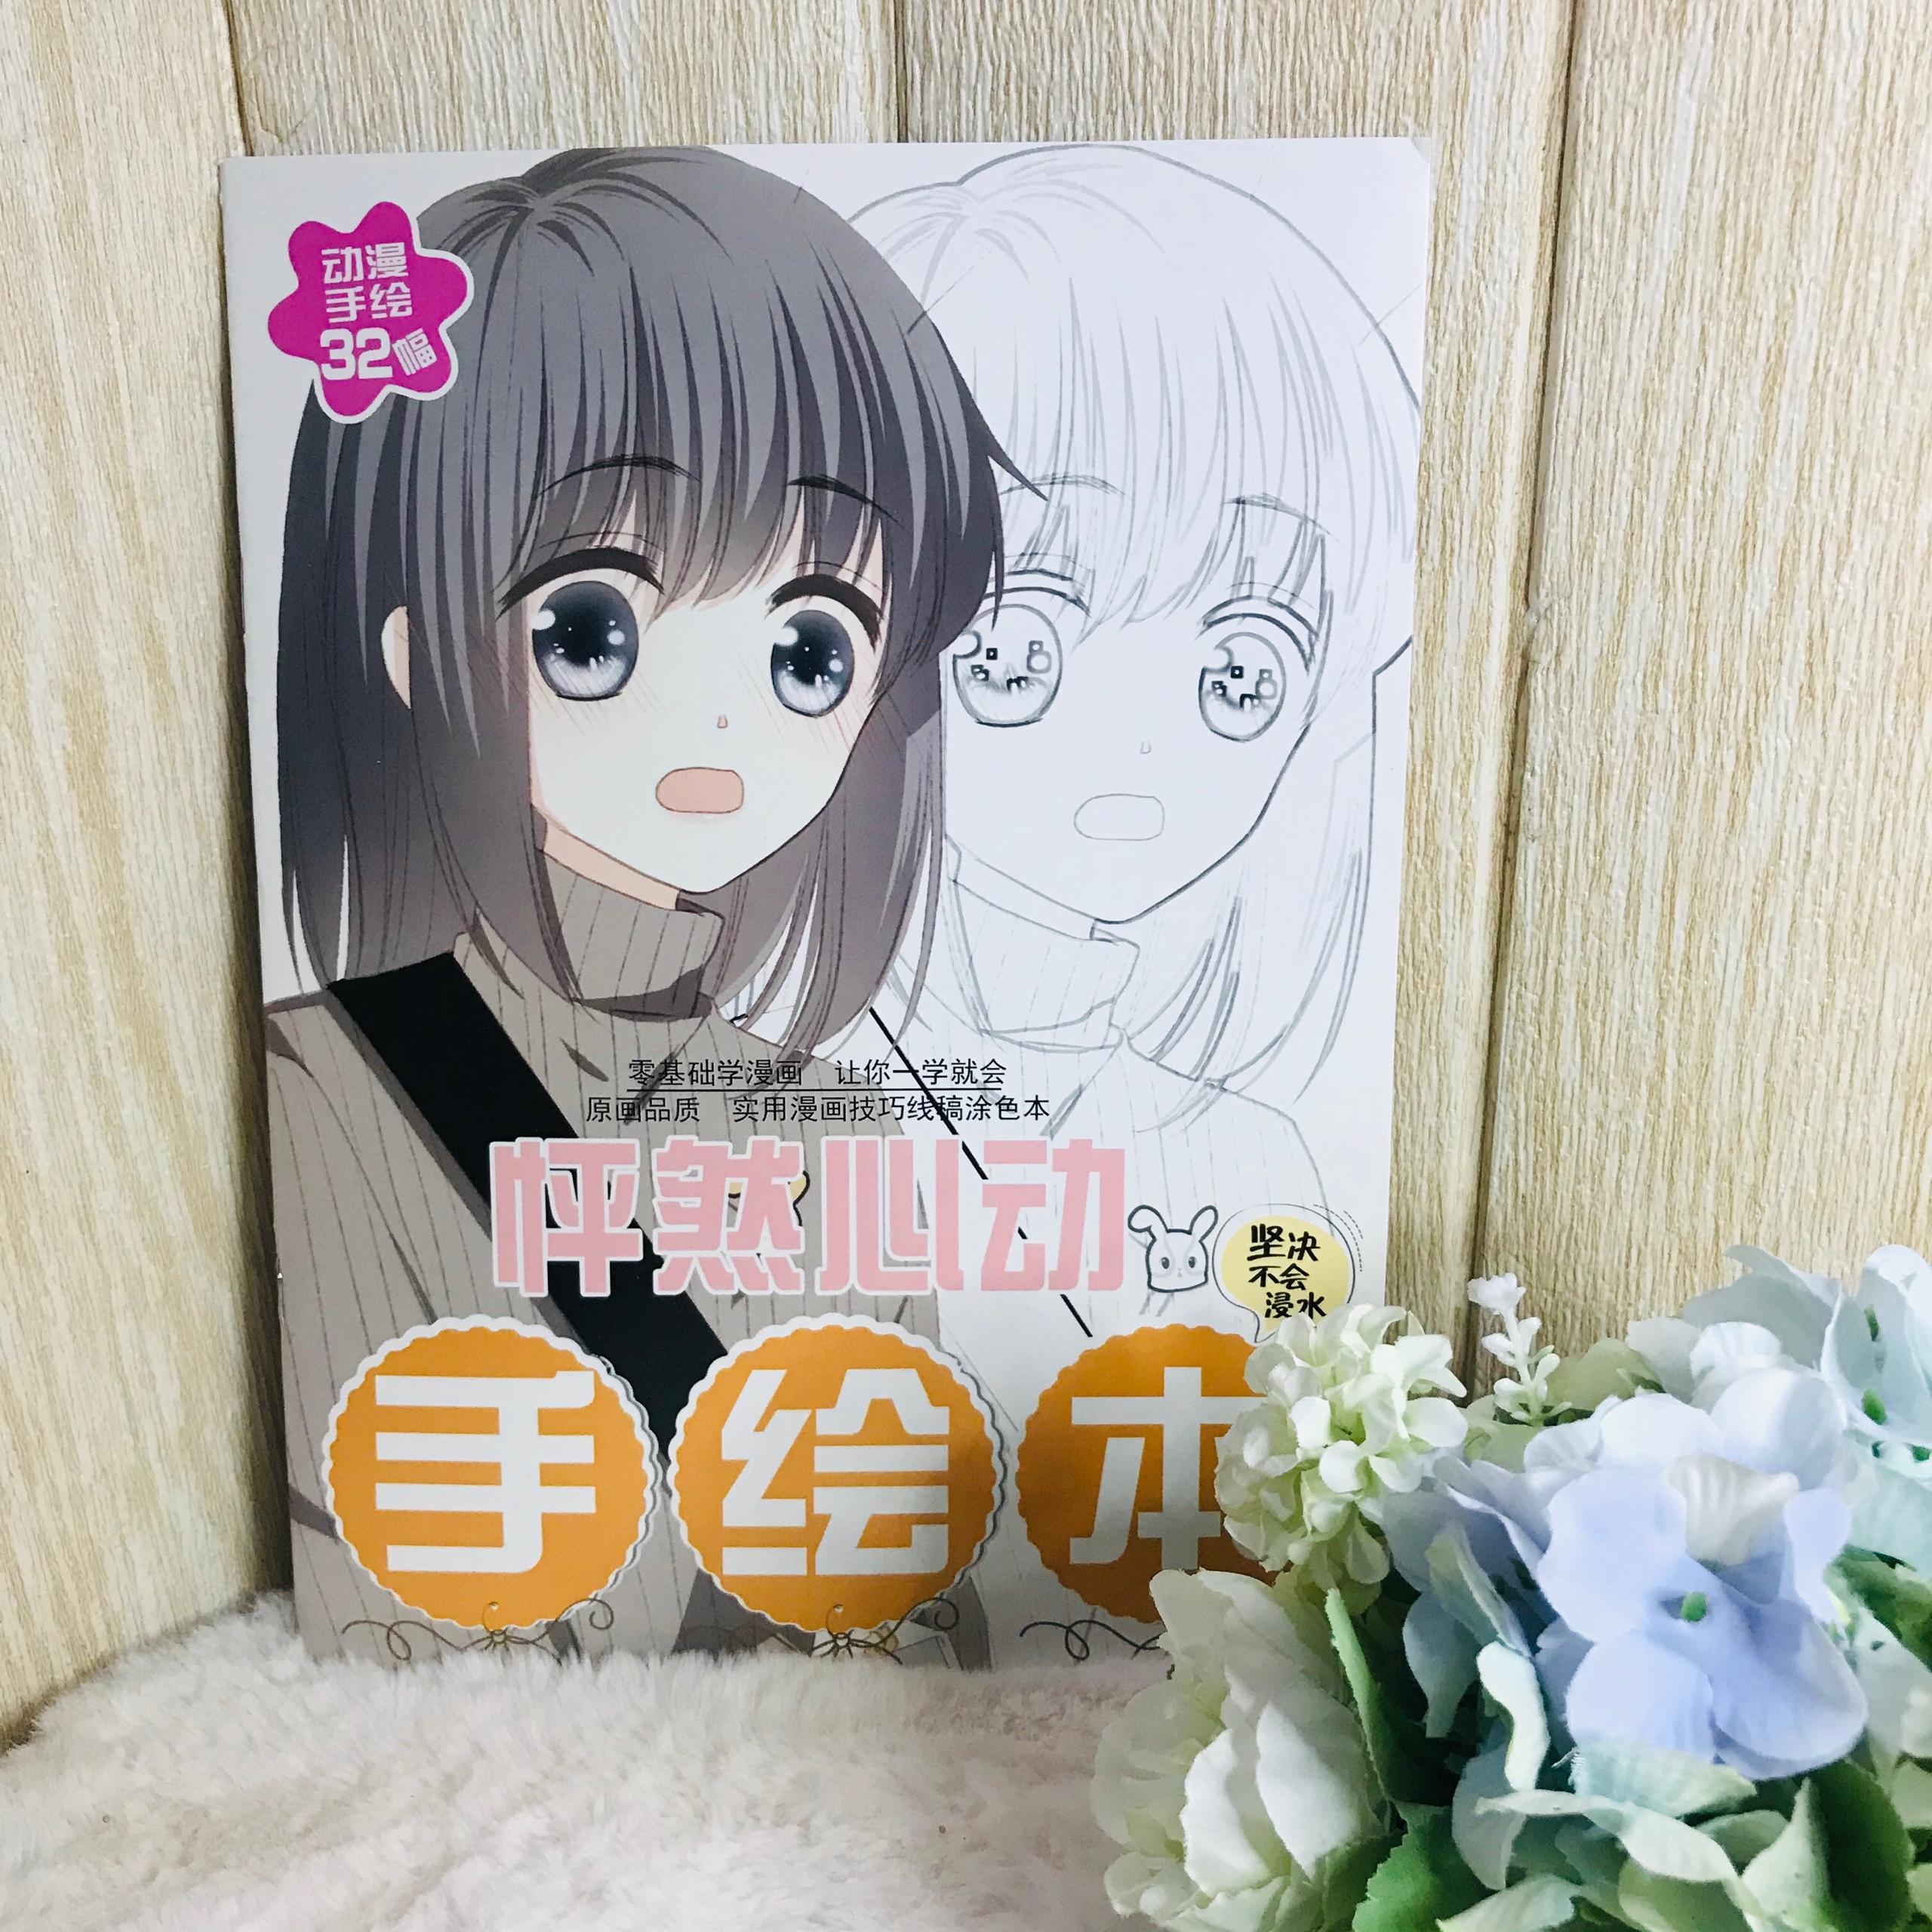 Hình nền  hình minh họa tóc dài Anime cô gái tóc màu tím Đôi mắt màu  tím Truyện tranh Thần thoại nàng tiên Nhân vật hư cấu Mangaka truyện  tranh 3078x4500 